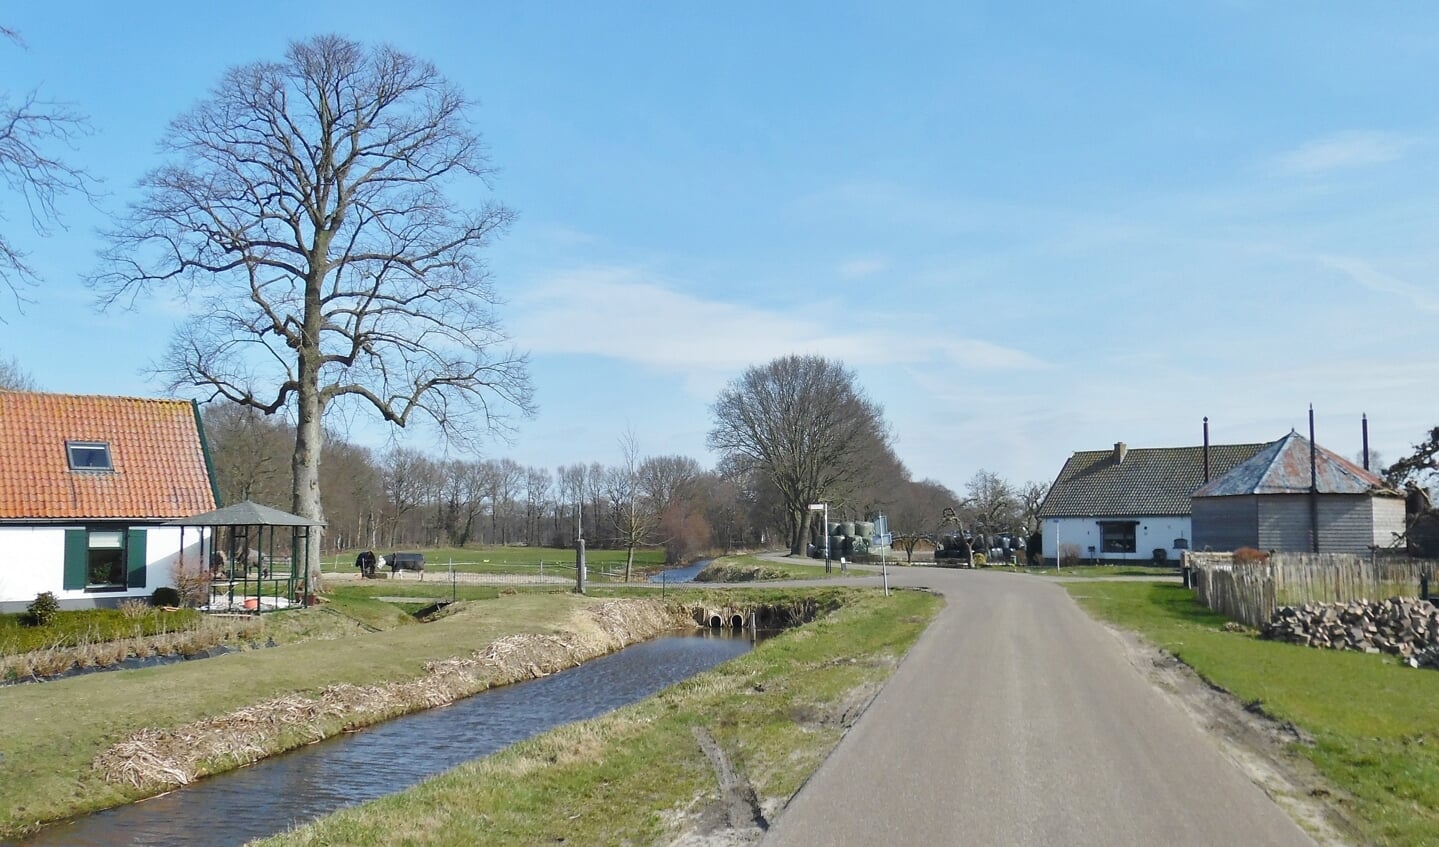 Deze foto volgt de grens over de Floris V weg naar het oosten, richting Hollandse Rading. Daar volgt de grens de abrupte overgang van het veenweidegebied naar bos.